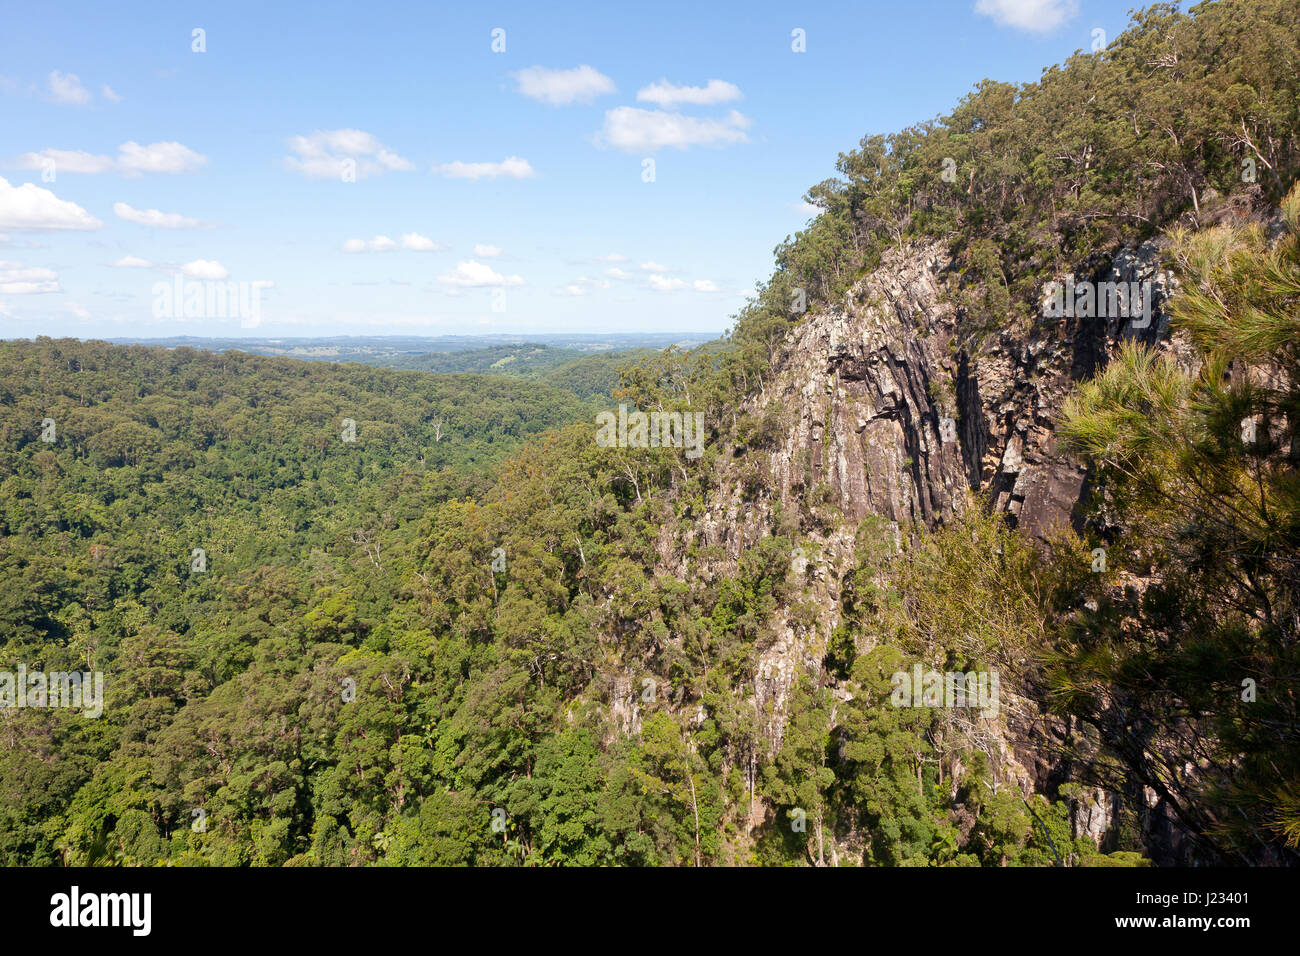 View from Minyon Falls, Nightcap Ranges National Park, NSW, Australia Stock Photo